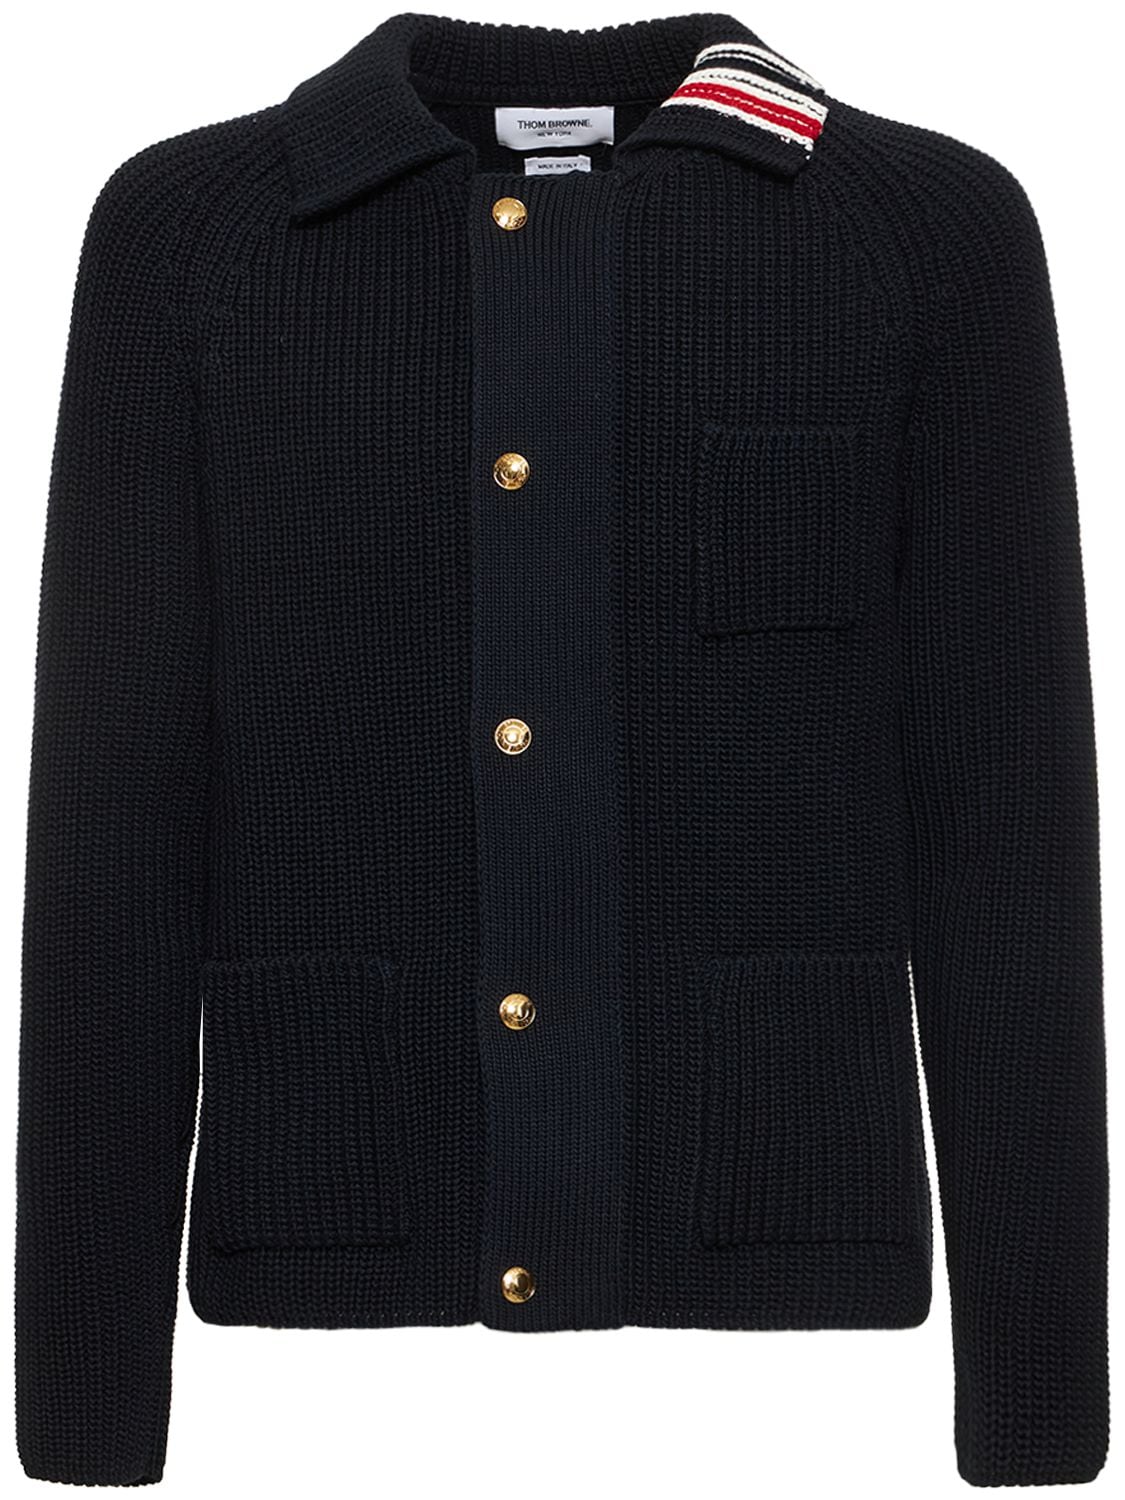 Cotton Zip Up Cardigan Jacket – MEN > CLOTHING > KNITWEAR